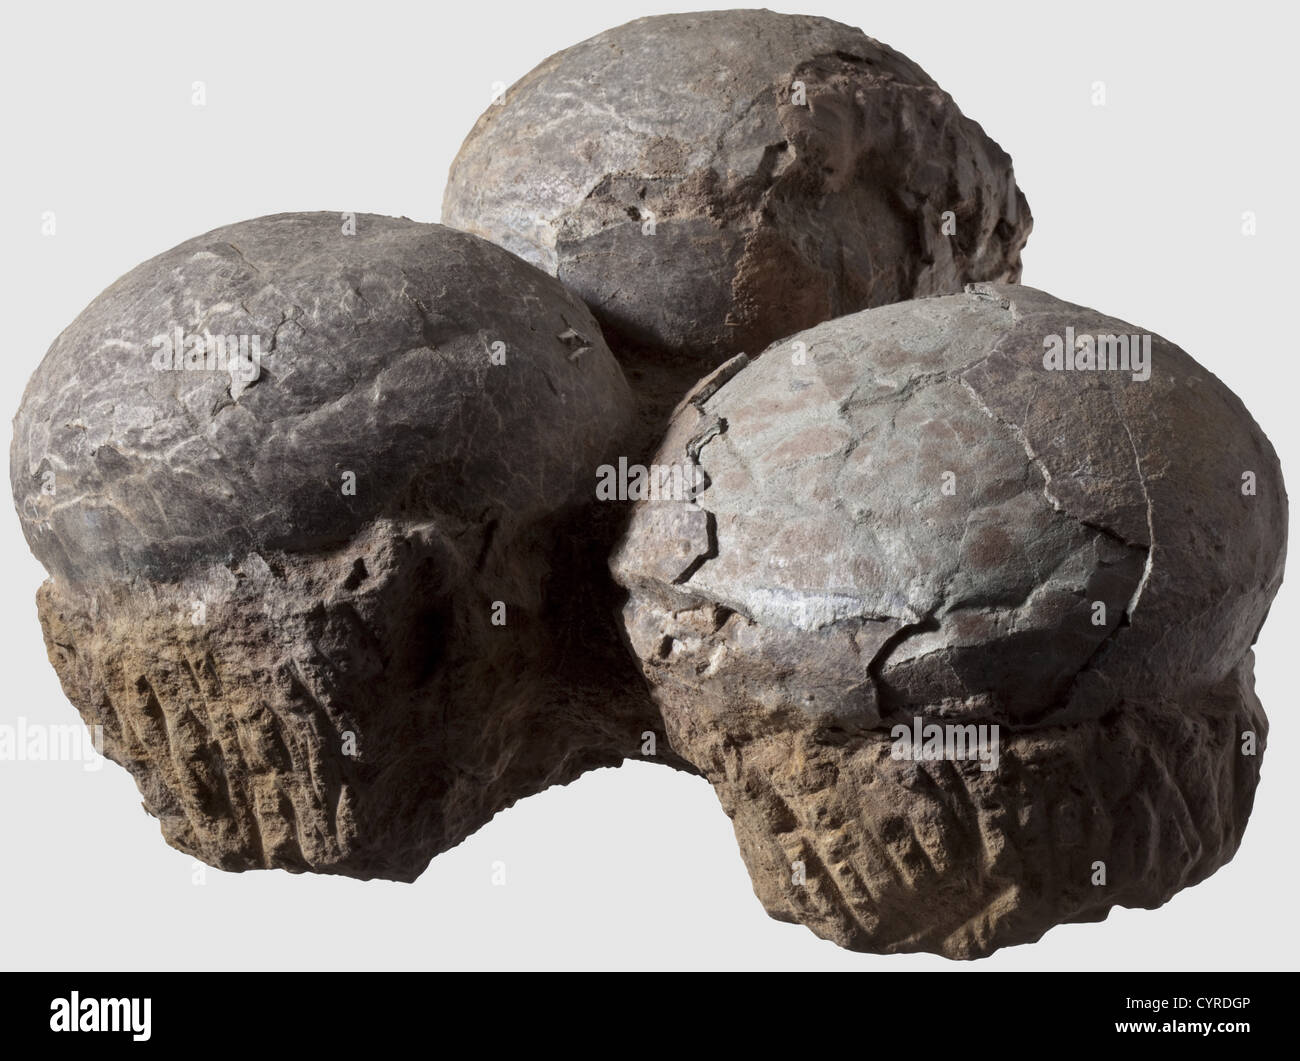 Uova di dinosauro, periodo Triassico/Cretaceo UNA frizione fossilizzata di tre uova con le conchiglie generalmente in uno stato di conservazione bello.un uovo danneggiato su top.Egg diametri ca.14 cm.l'età dei dinosauri ha cominciato circa 230 milioni di anni fa, e ha terminato 65 milioni di anni fa.There sono circa 220 scoperte conosciute di frizioni di uovo di dinosauro Da questo intero periodo, il primo trovato in Francia a metà del 19 ° secolo. Scoperte di embrioni fossili e nestlings sono, tuttavia, estremamente rari, e la classificazione delle uova è estremamente difficile, storico,,, ulteriori-diritti-clearences-non disponibile Foto Stock